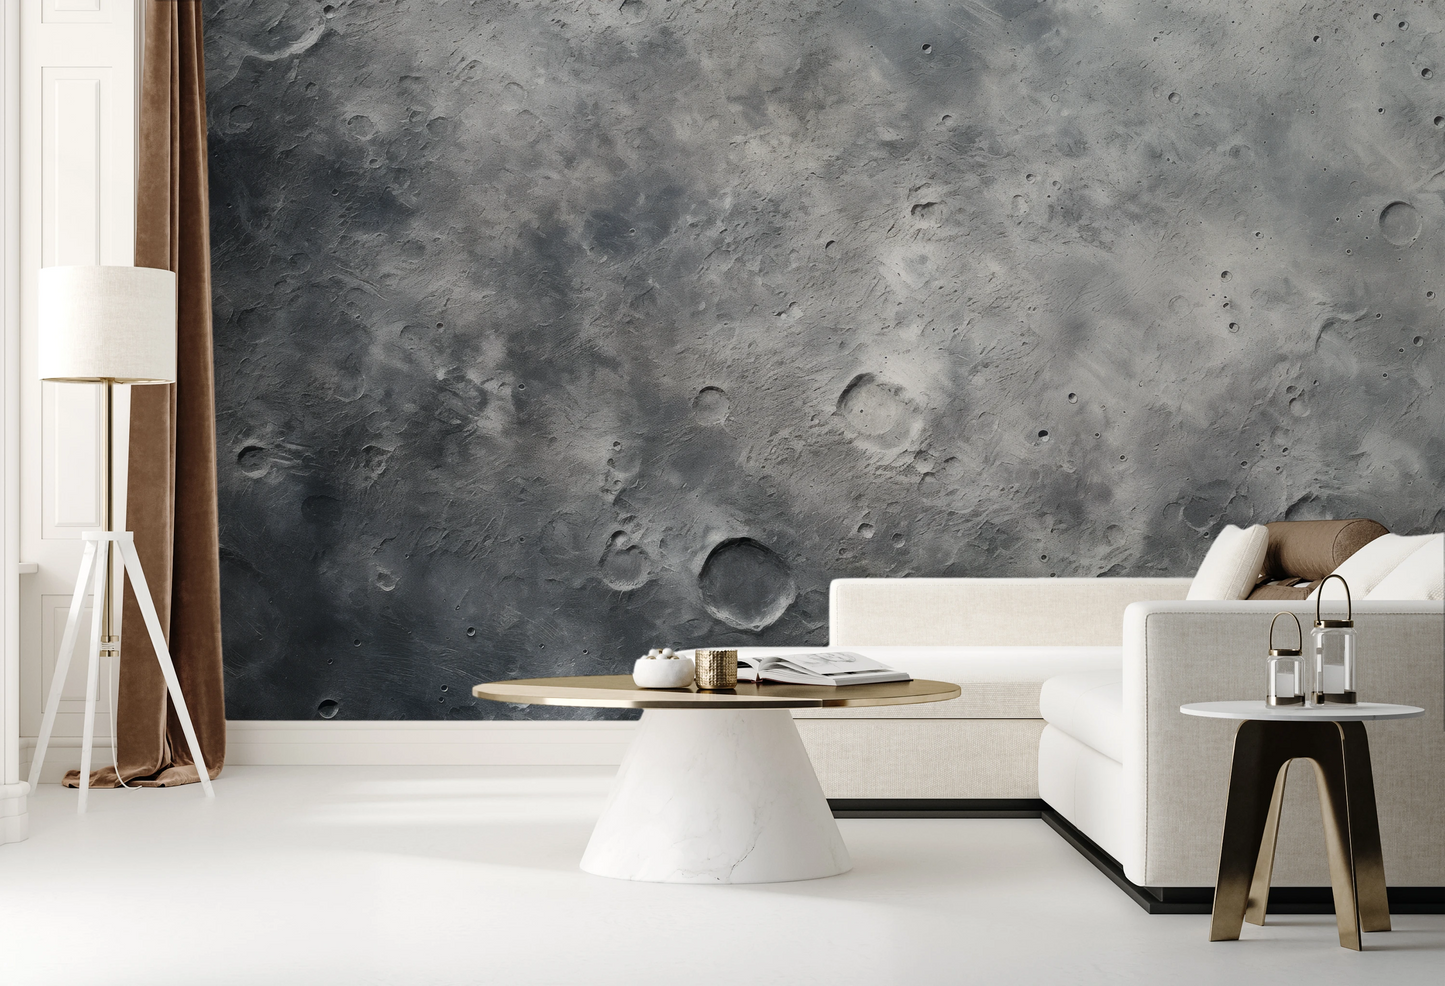 Fototapeta malowana o nazwie Lunar Landscape #2 pokazana w aranżacji wnętrza.